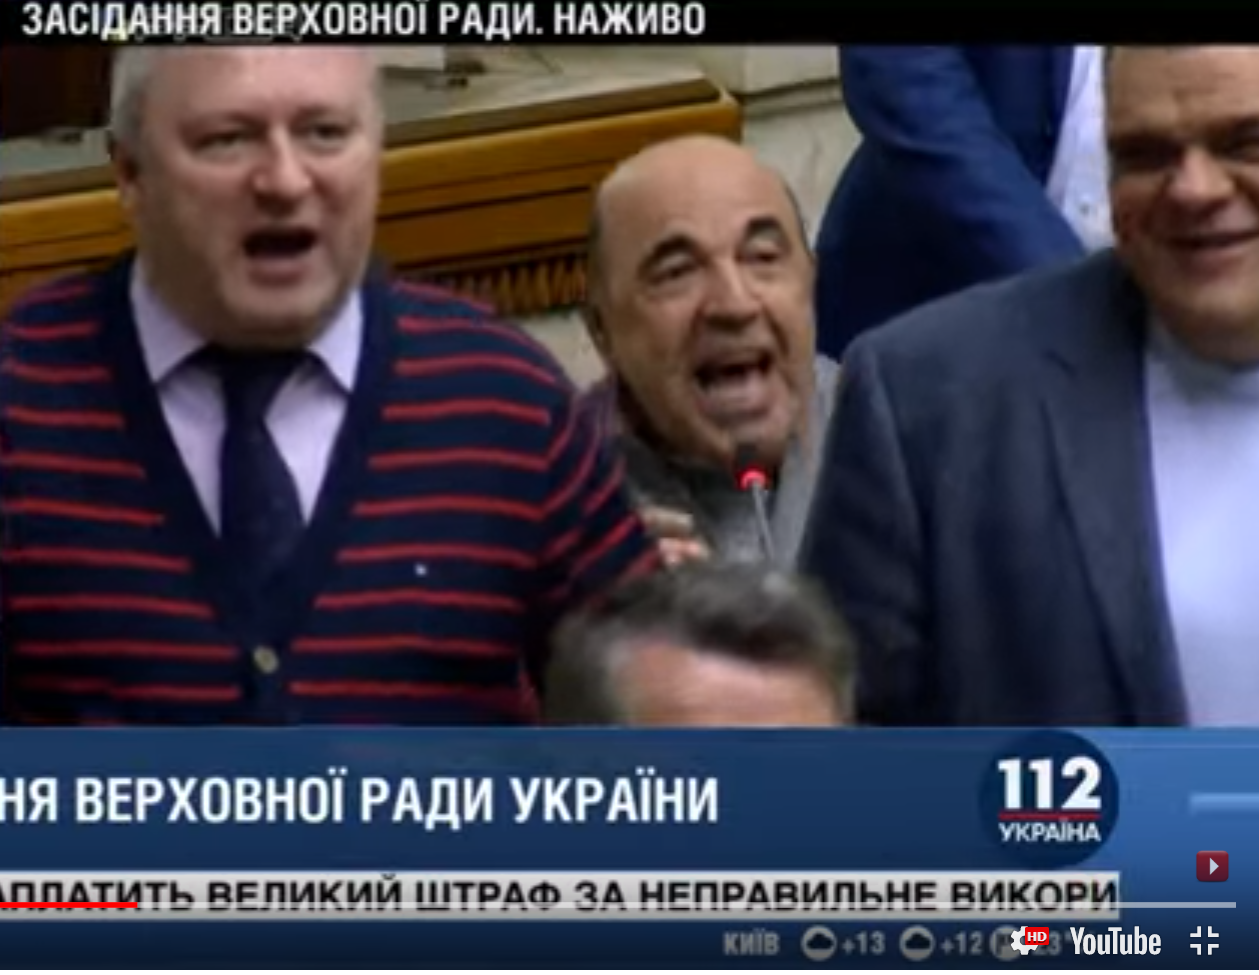 Рабинович принялся оскорблять "слугу народа" за обидные слова о себе: видео скандала